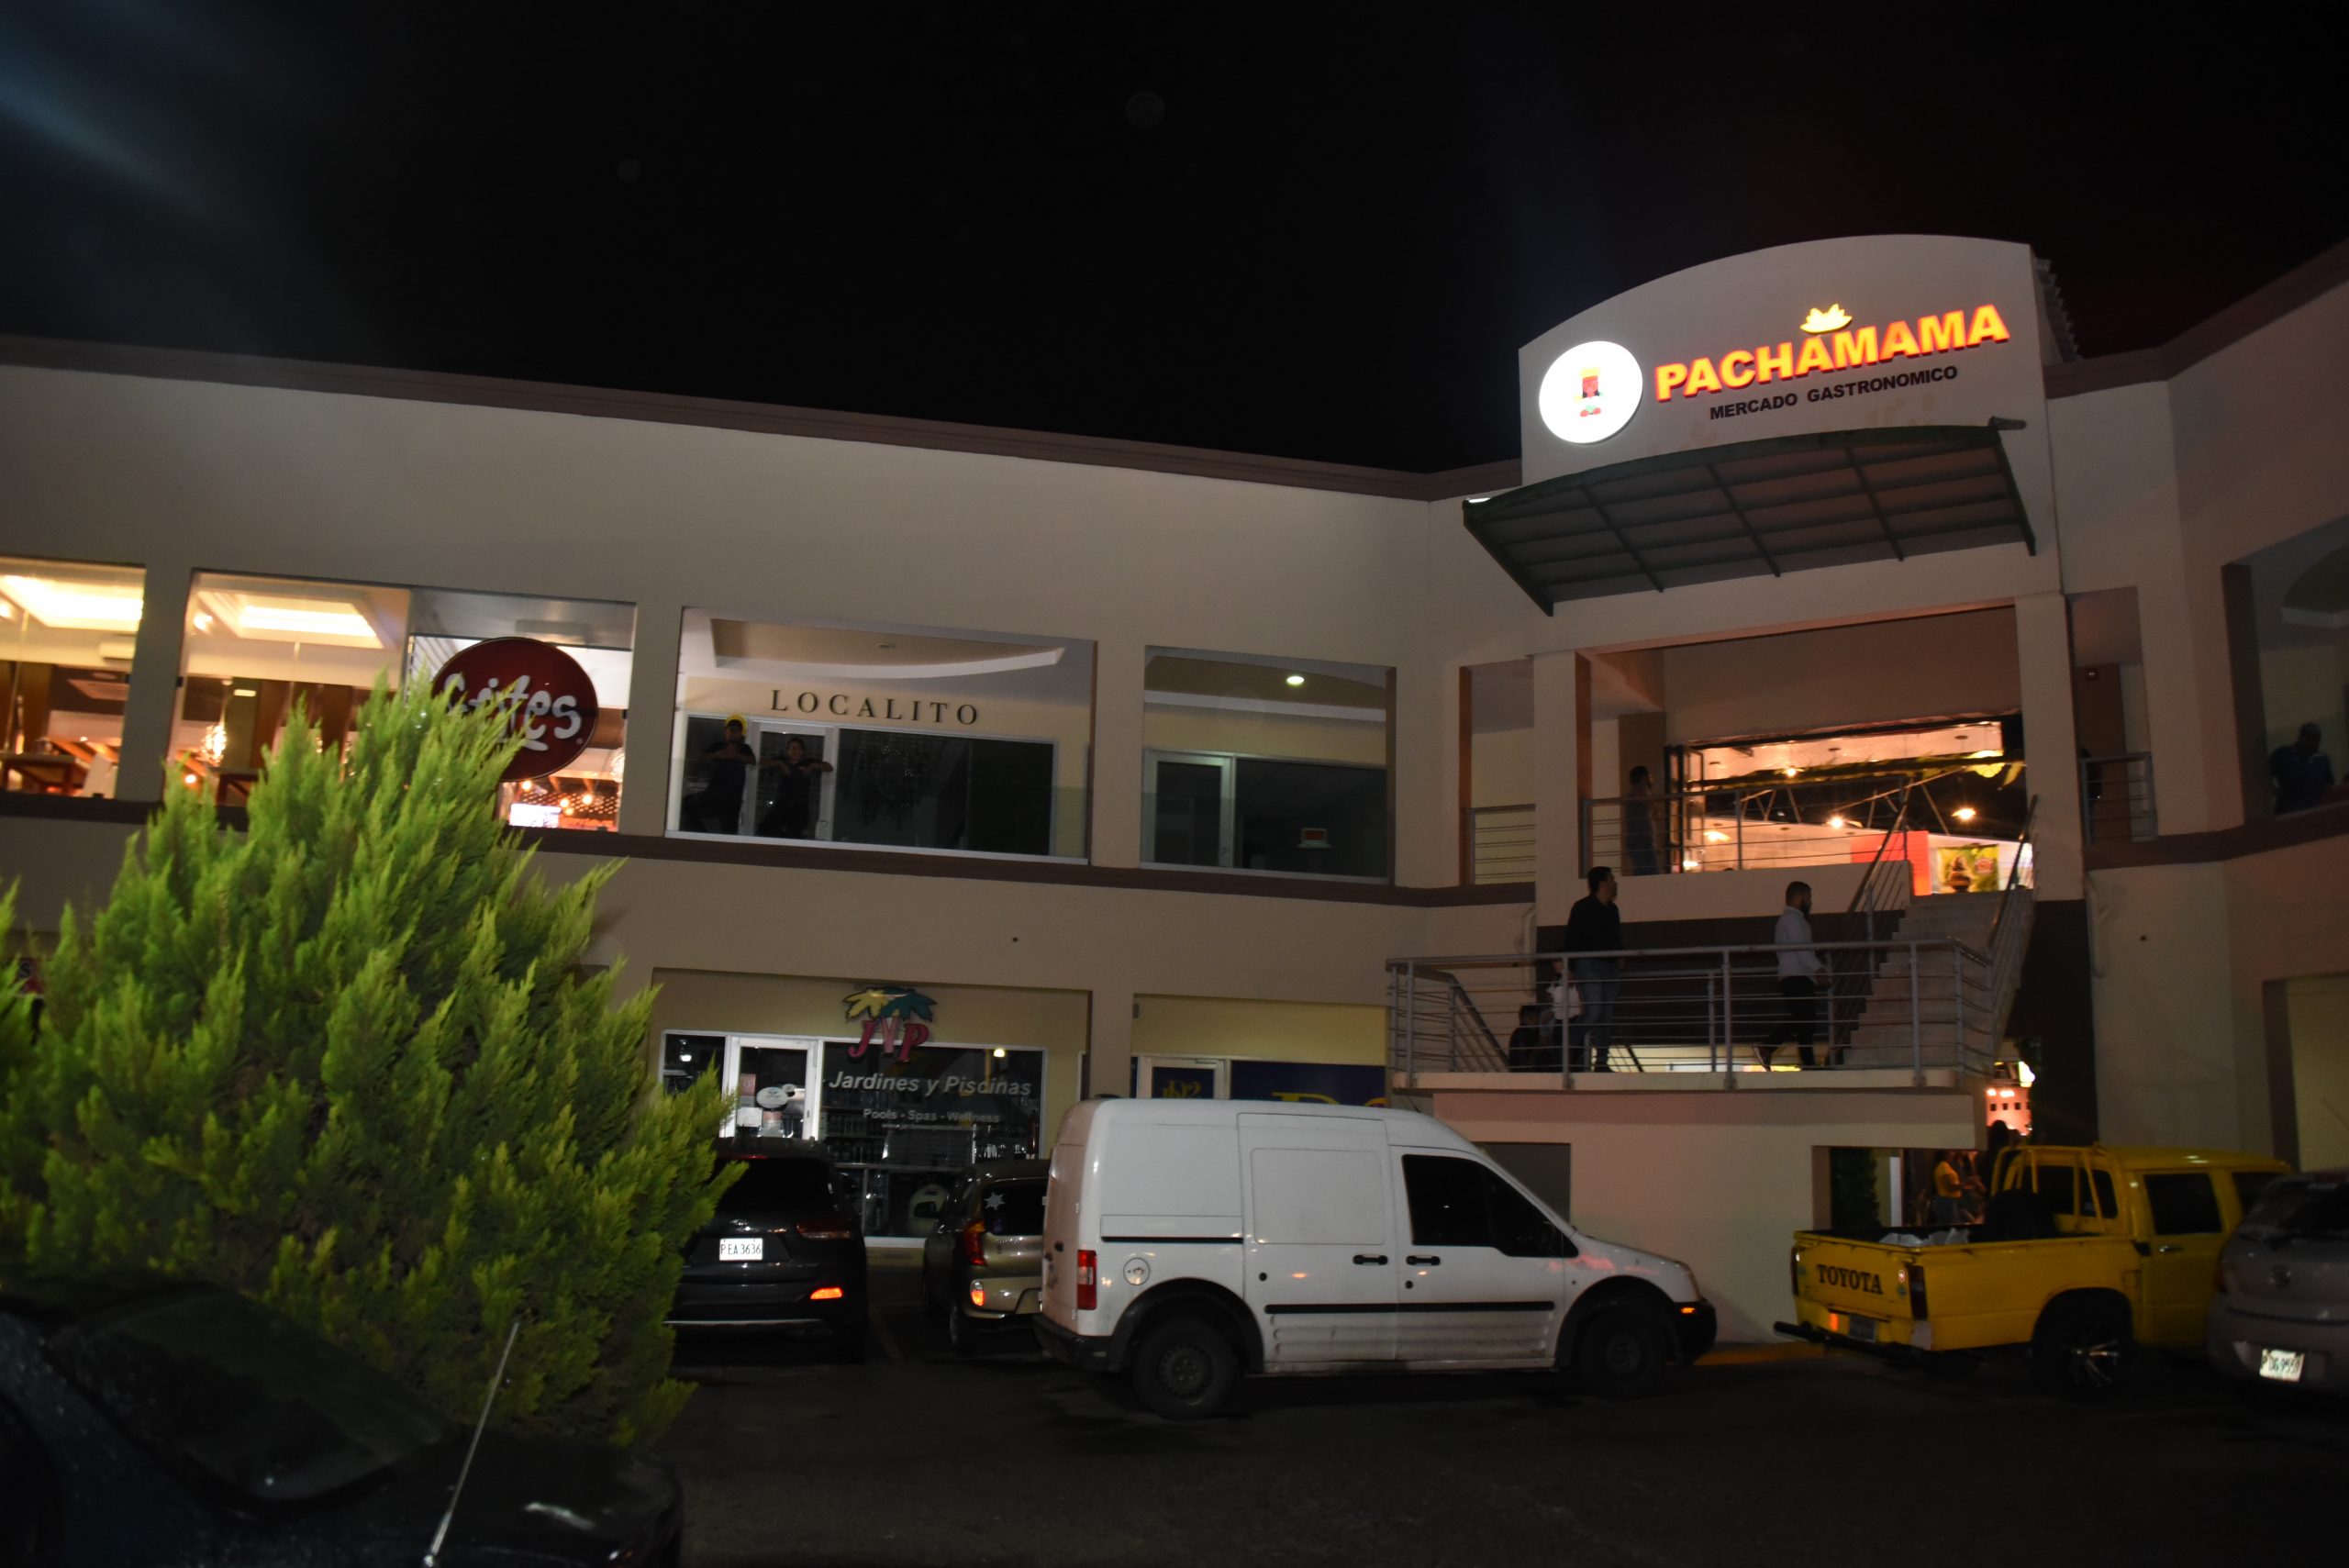 Pachamama aglutina a varios restaurantes en una sola, moderna y atractiva plaza gastronómica 